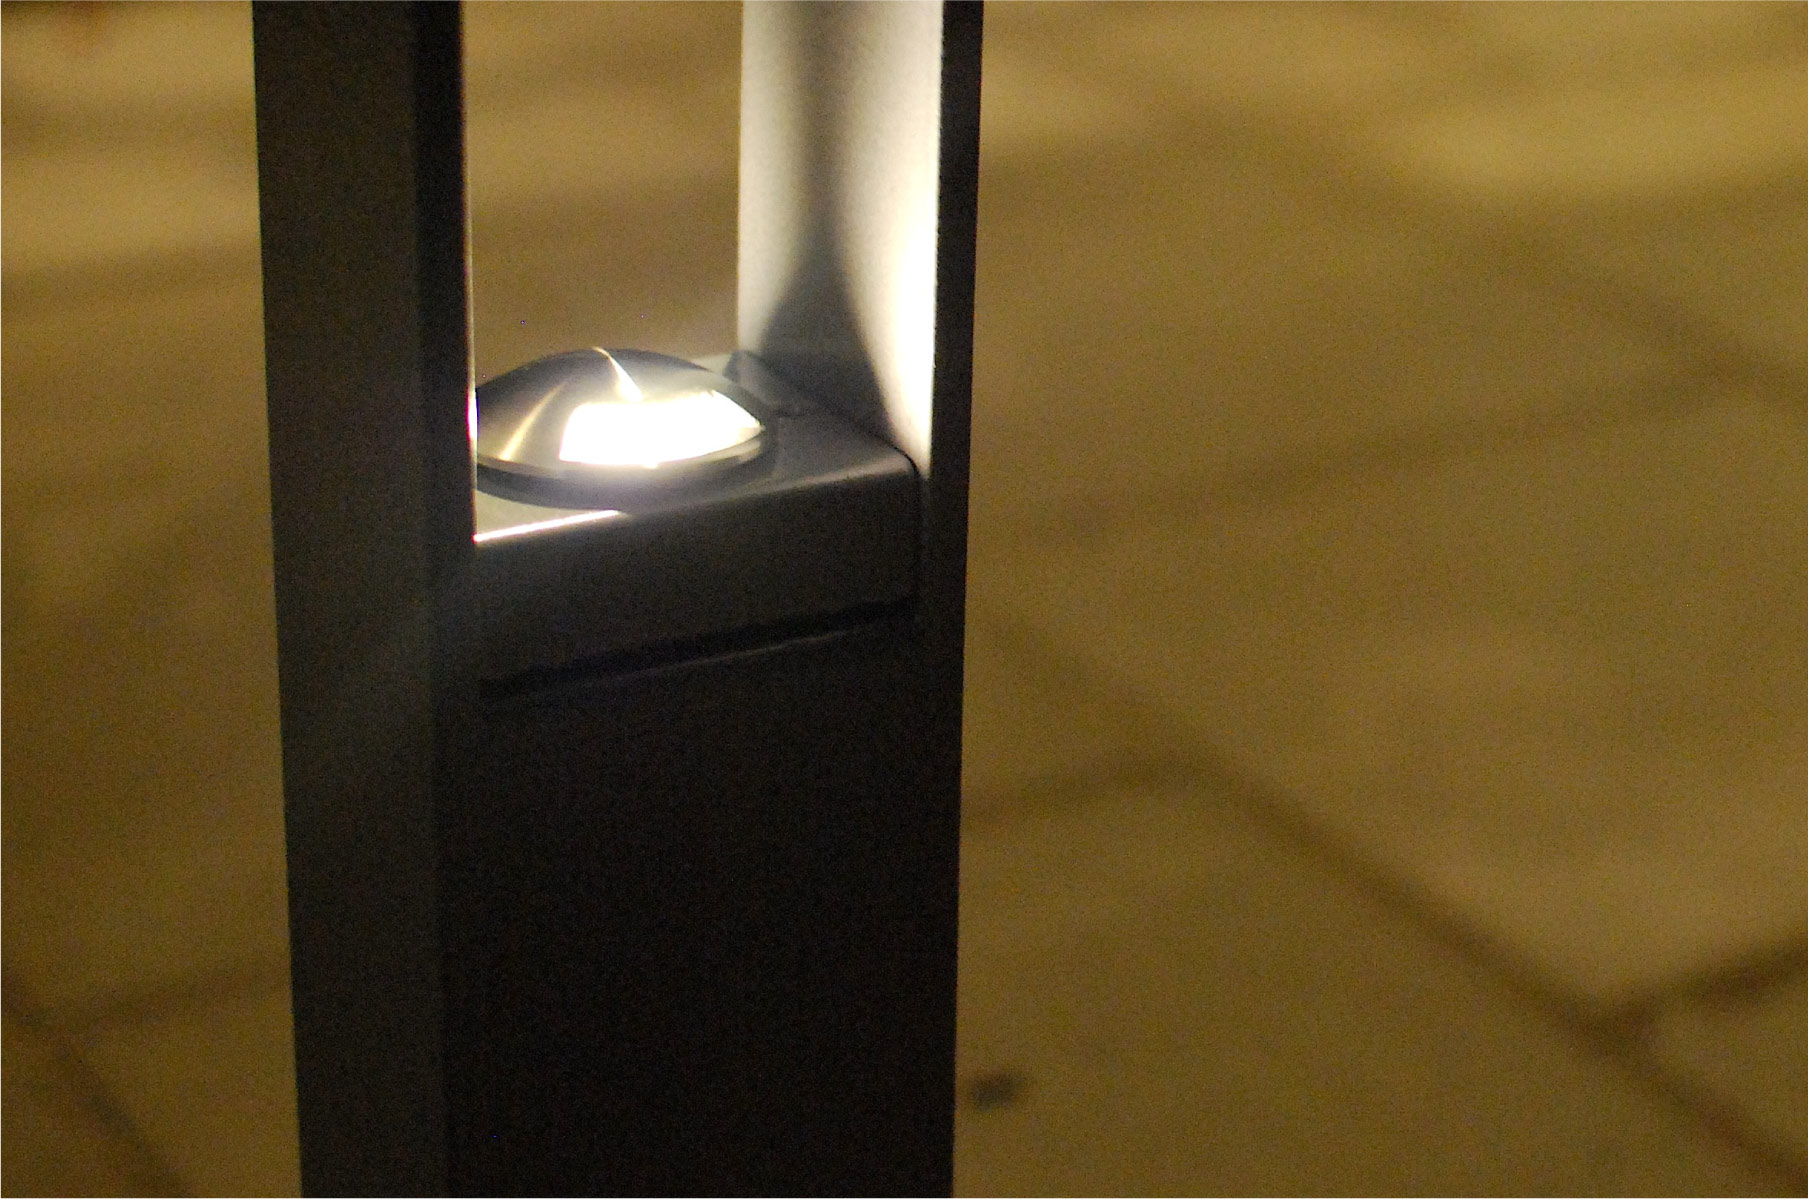 LUX pyörätelinepollari runkolukolla, huomiotaherättämätön muotoilu julkisella alueella, kuvassa hieno valaistus